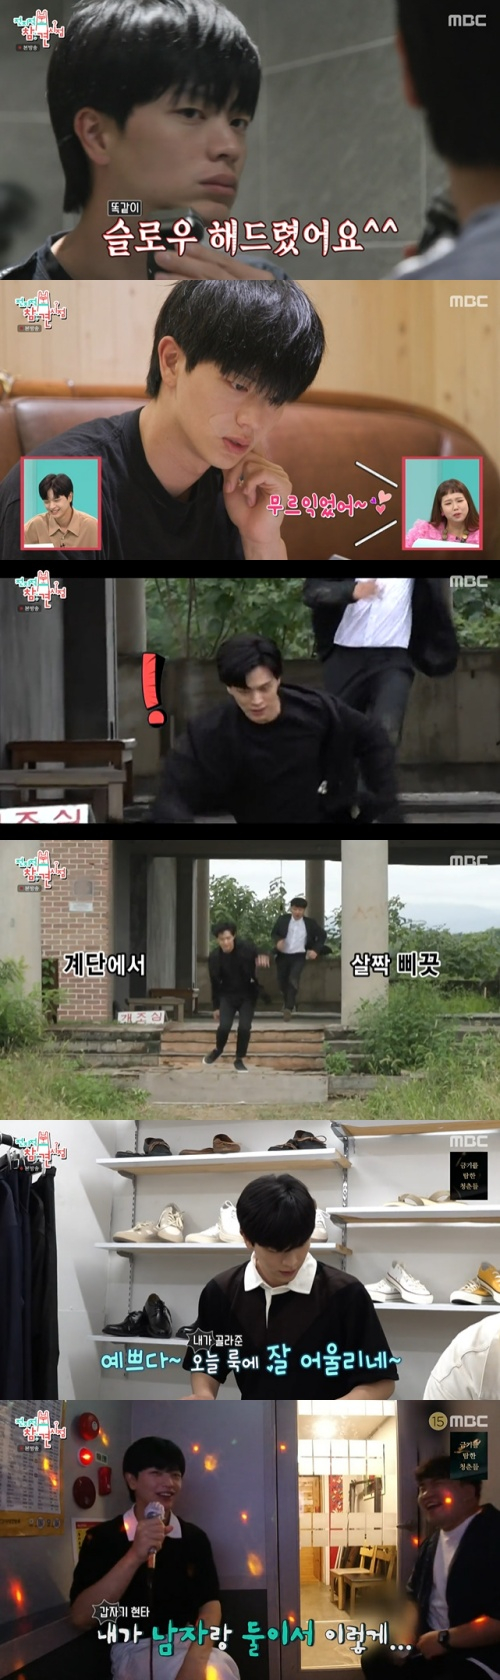 /사진=MBC 예능프로그램 '전지적 참견 시점'(이하 '전참시') 방송 화면 캡쳐